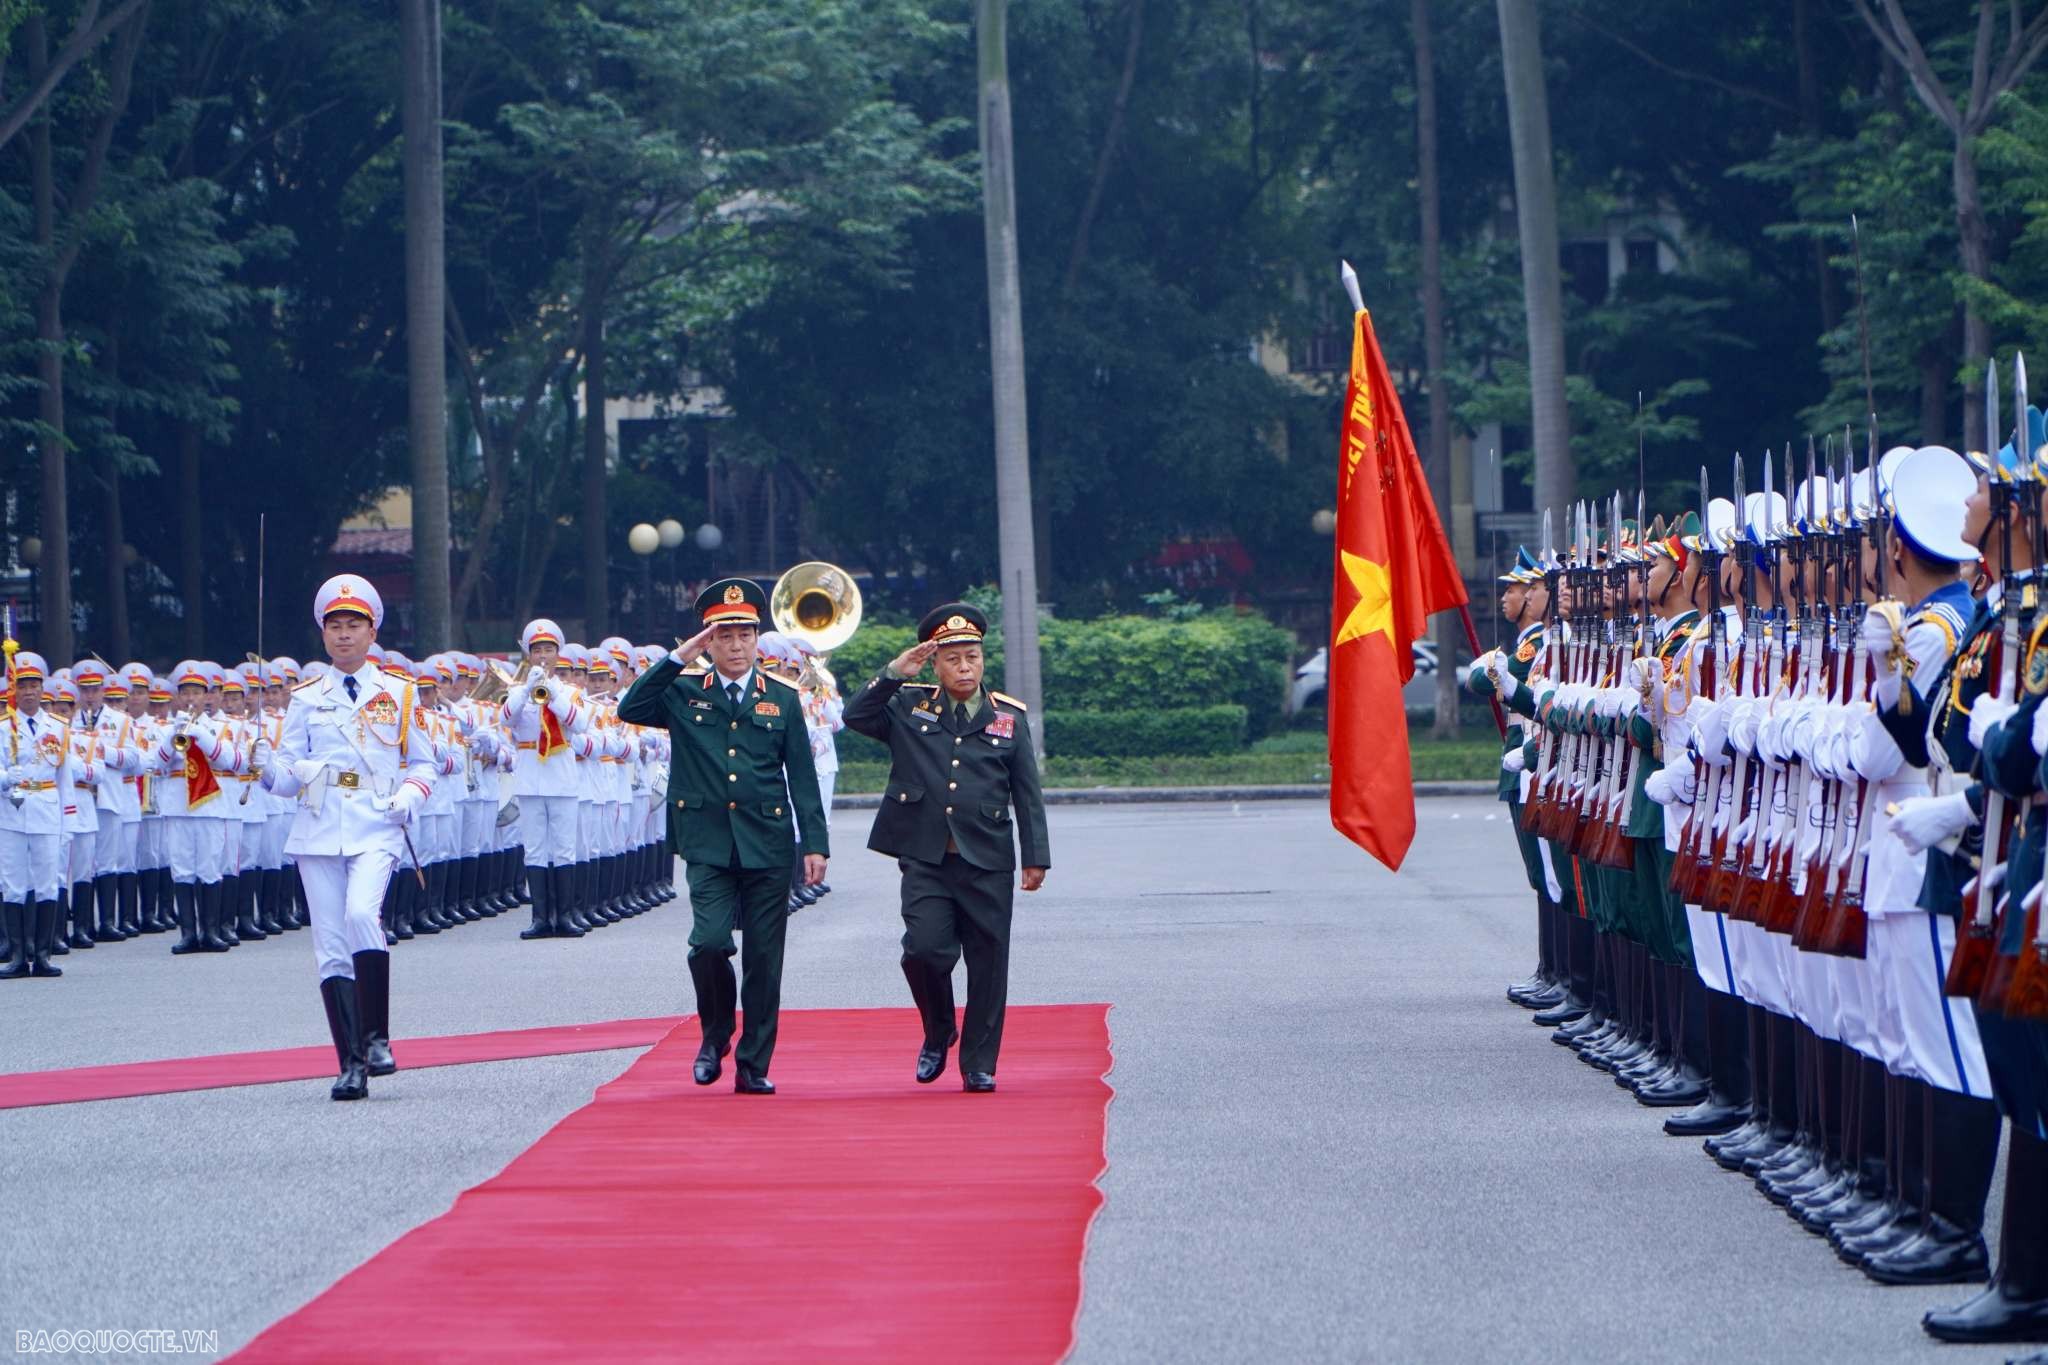 Thắt chặt hơn nữa tình gắn kết giữa quân đội Việt-Lào